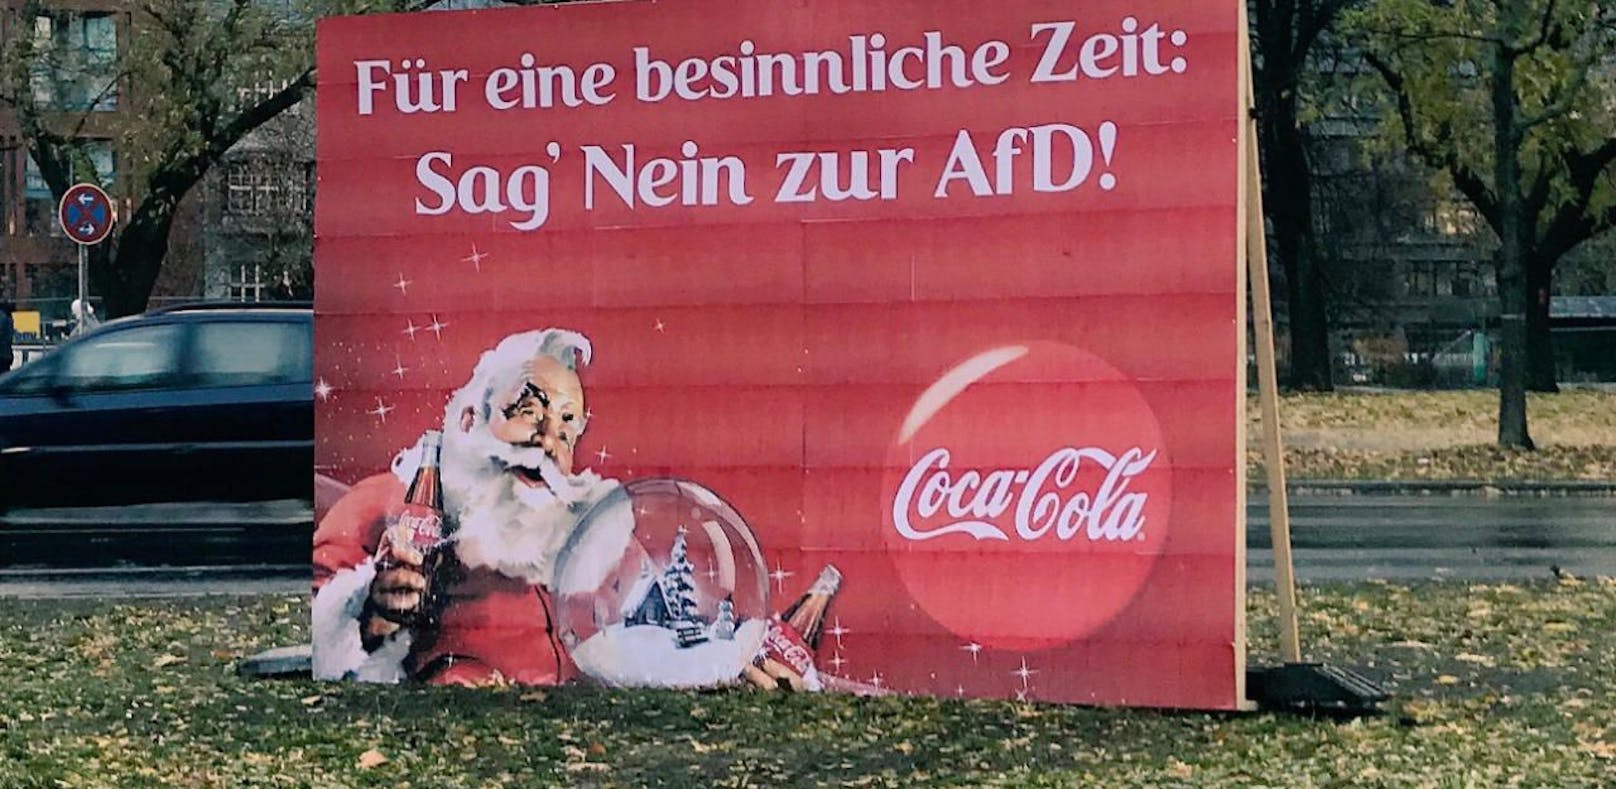 Vermeintliches Coca-Cola-Plakat macht gegen die AfD Stimmung.